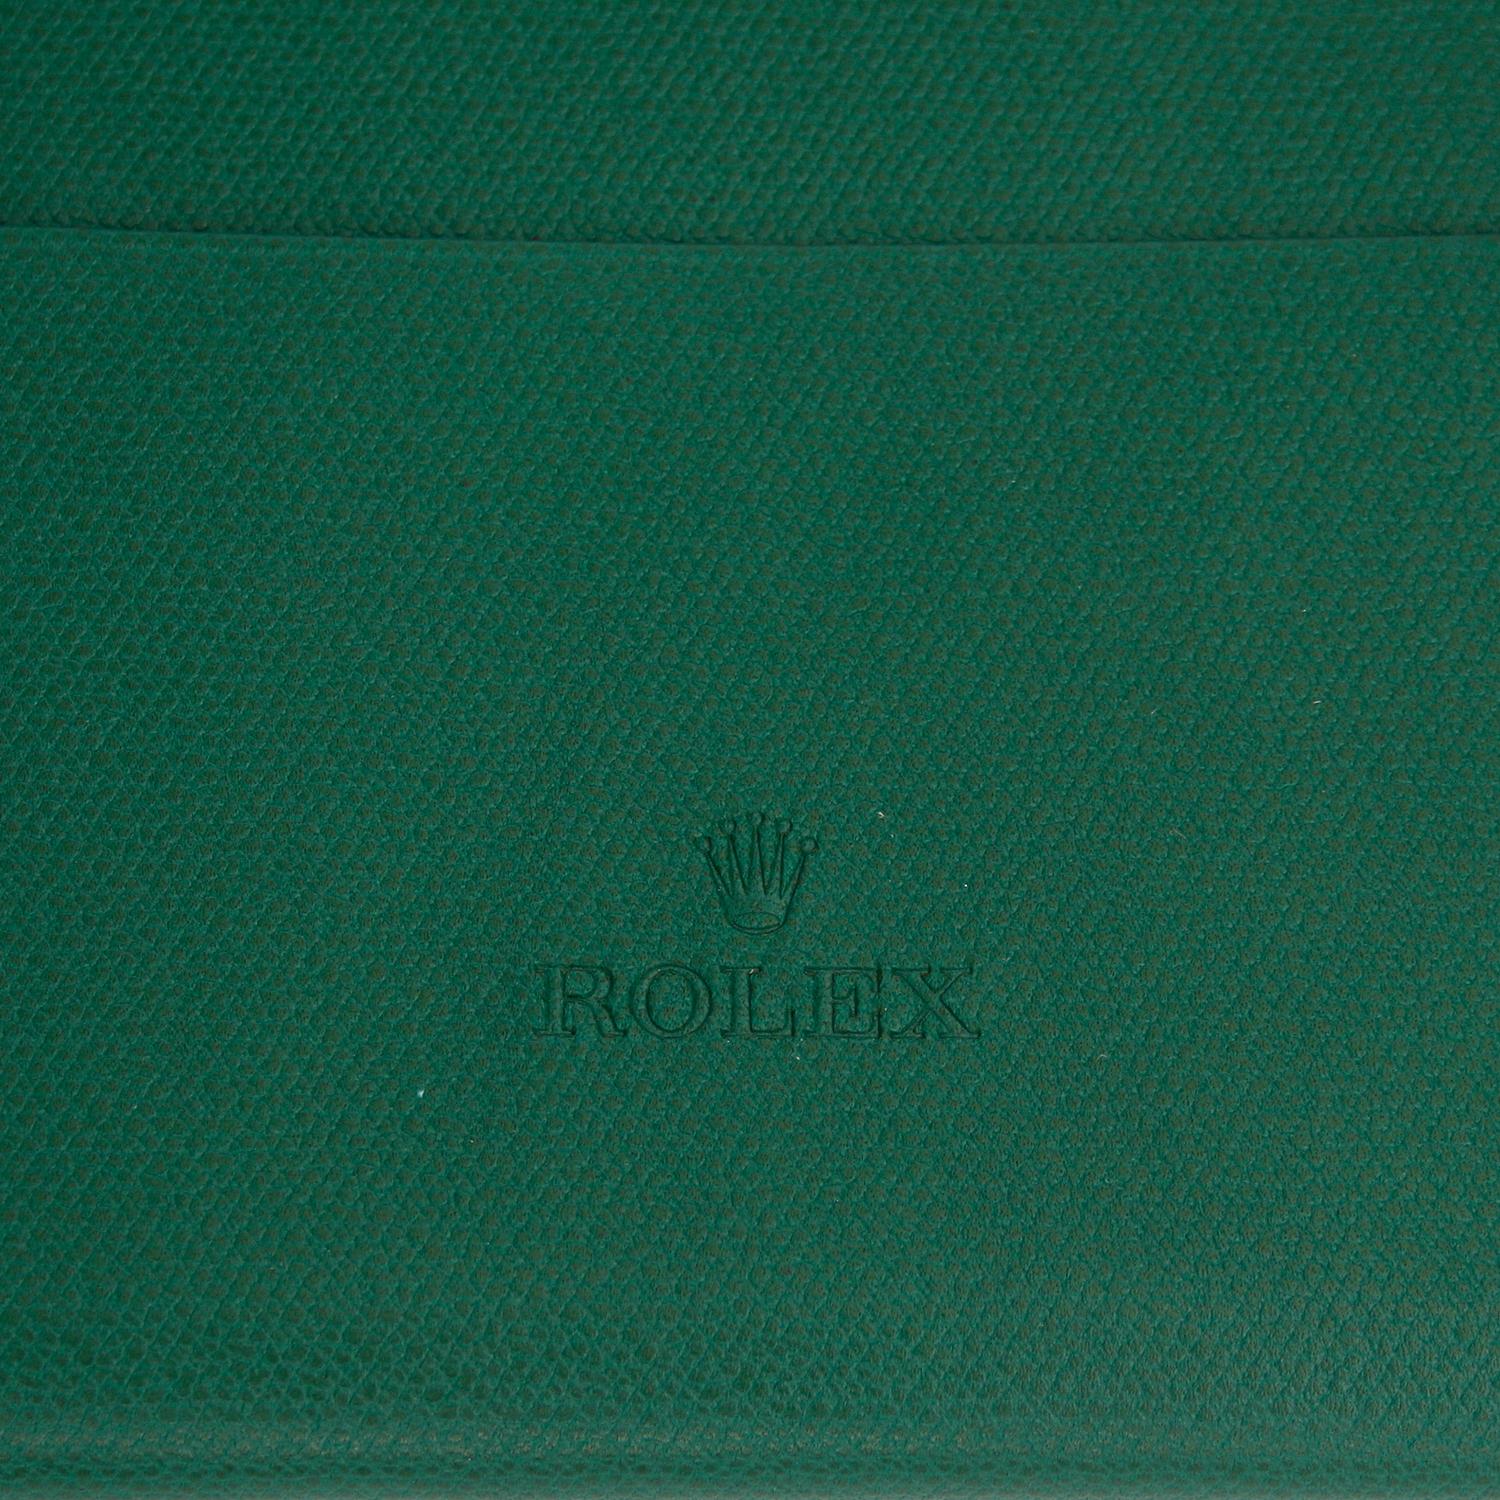 Sehr seltene Rolex Lederhandtasche - Grüne Rolex Lederhandtasche. Abmessungen: 7 x 4,5 Zoll. Kann als Umhängetasche oder als Gürteltasche getragen werden. Wird mit Gurt geliefert. Hervorragend für einen lässigen Auftritt mit Stil. 